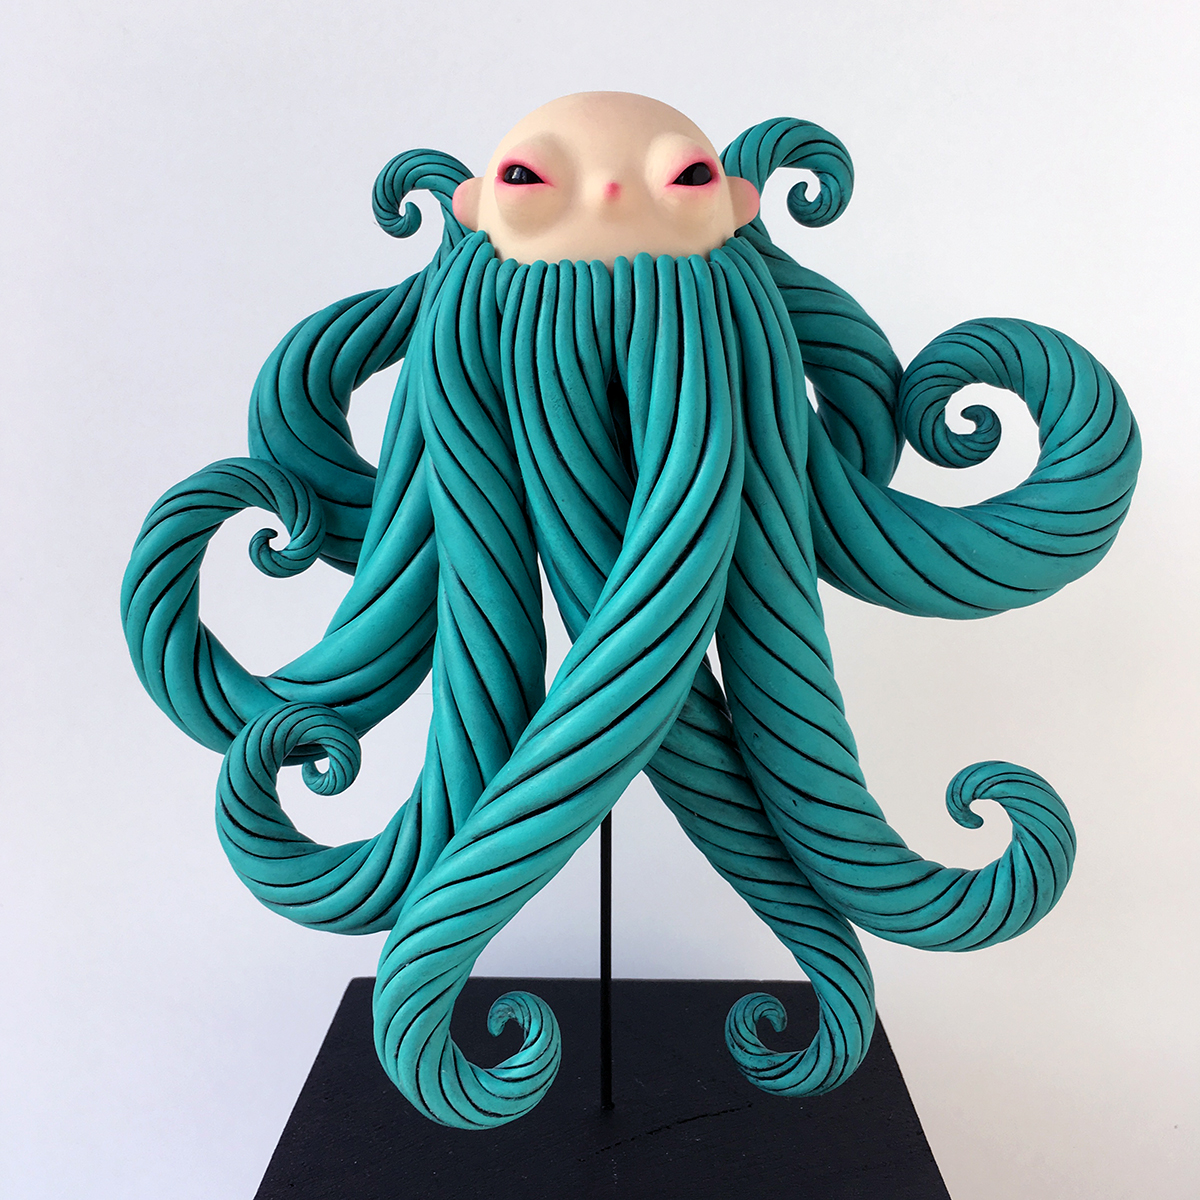 Sculpture of a creature half blue bearded man half octopus